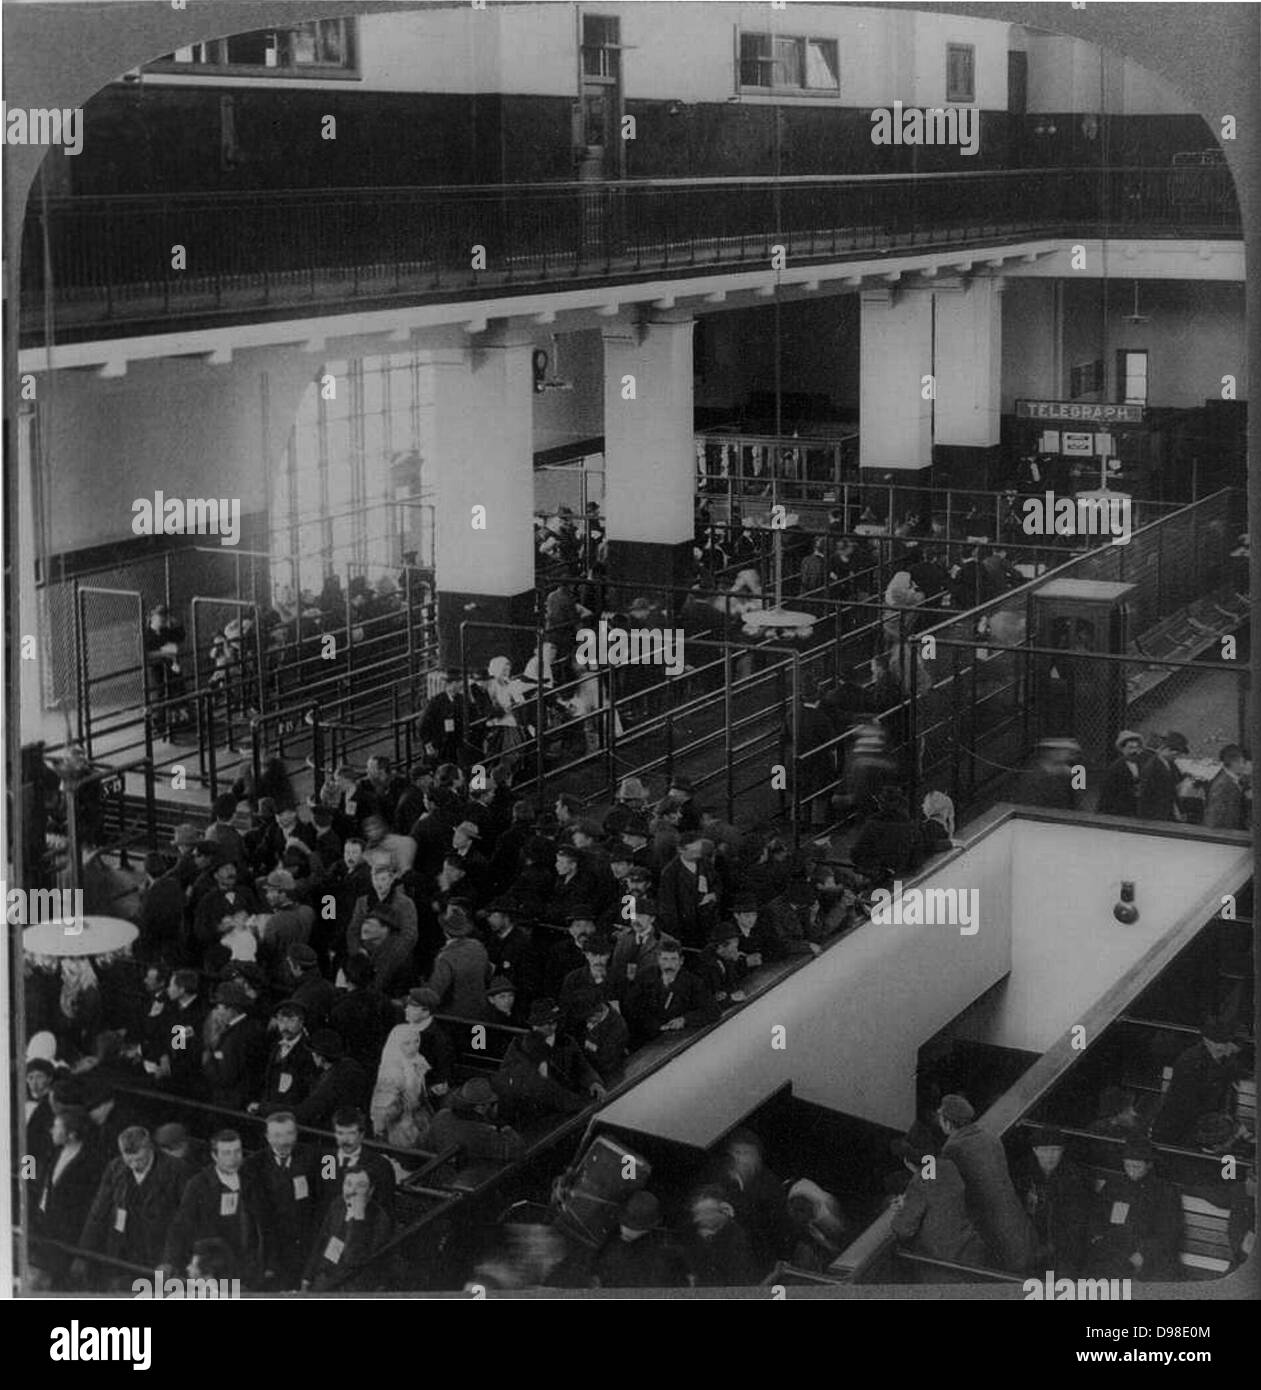 Les immigrants arrivés aux etats unis de l'Europe attendent d'être traitées dans le bâtiment d'immigrants, Ellis Island, New York. Banque D'Images